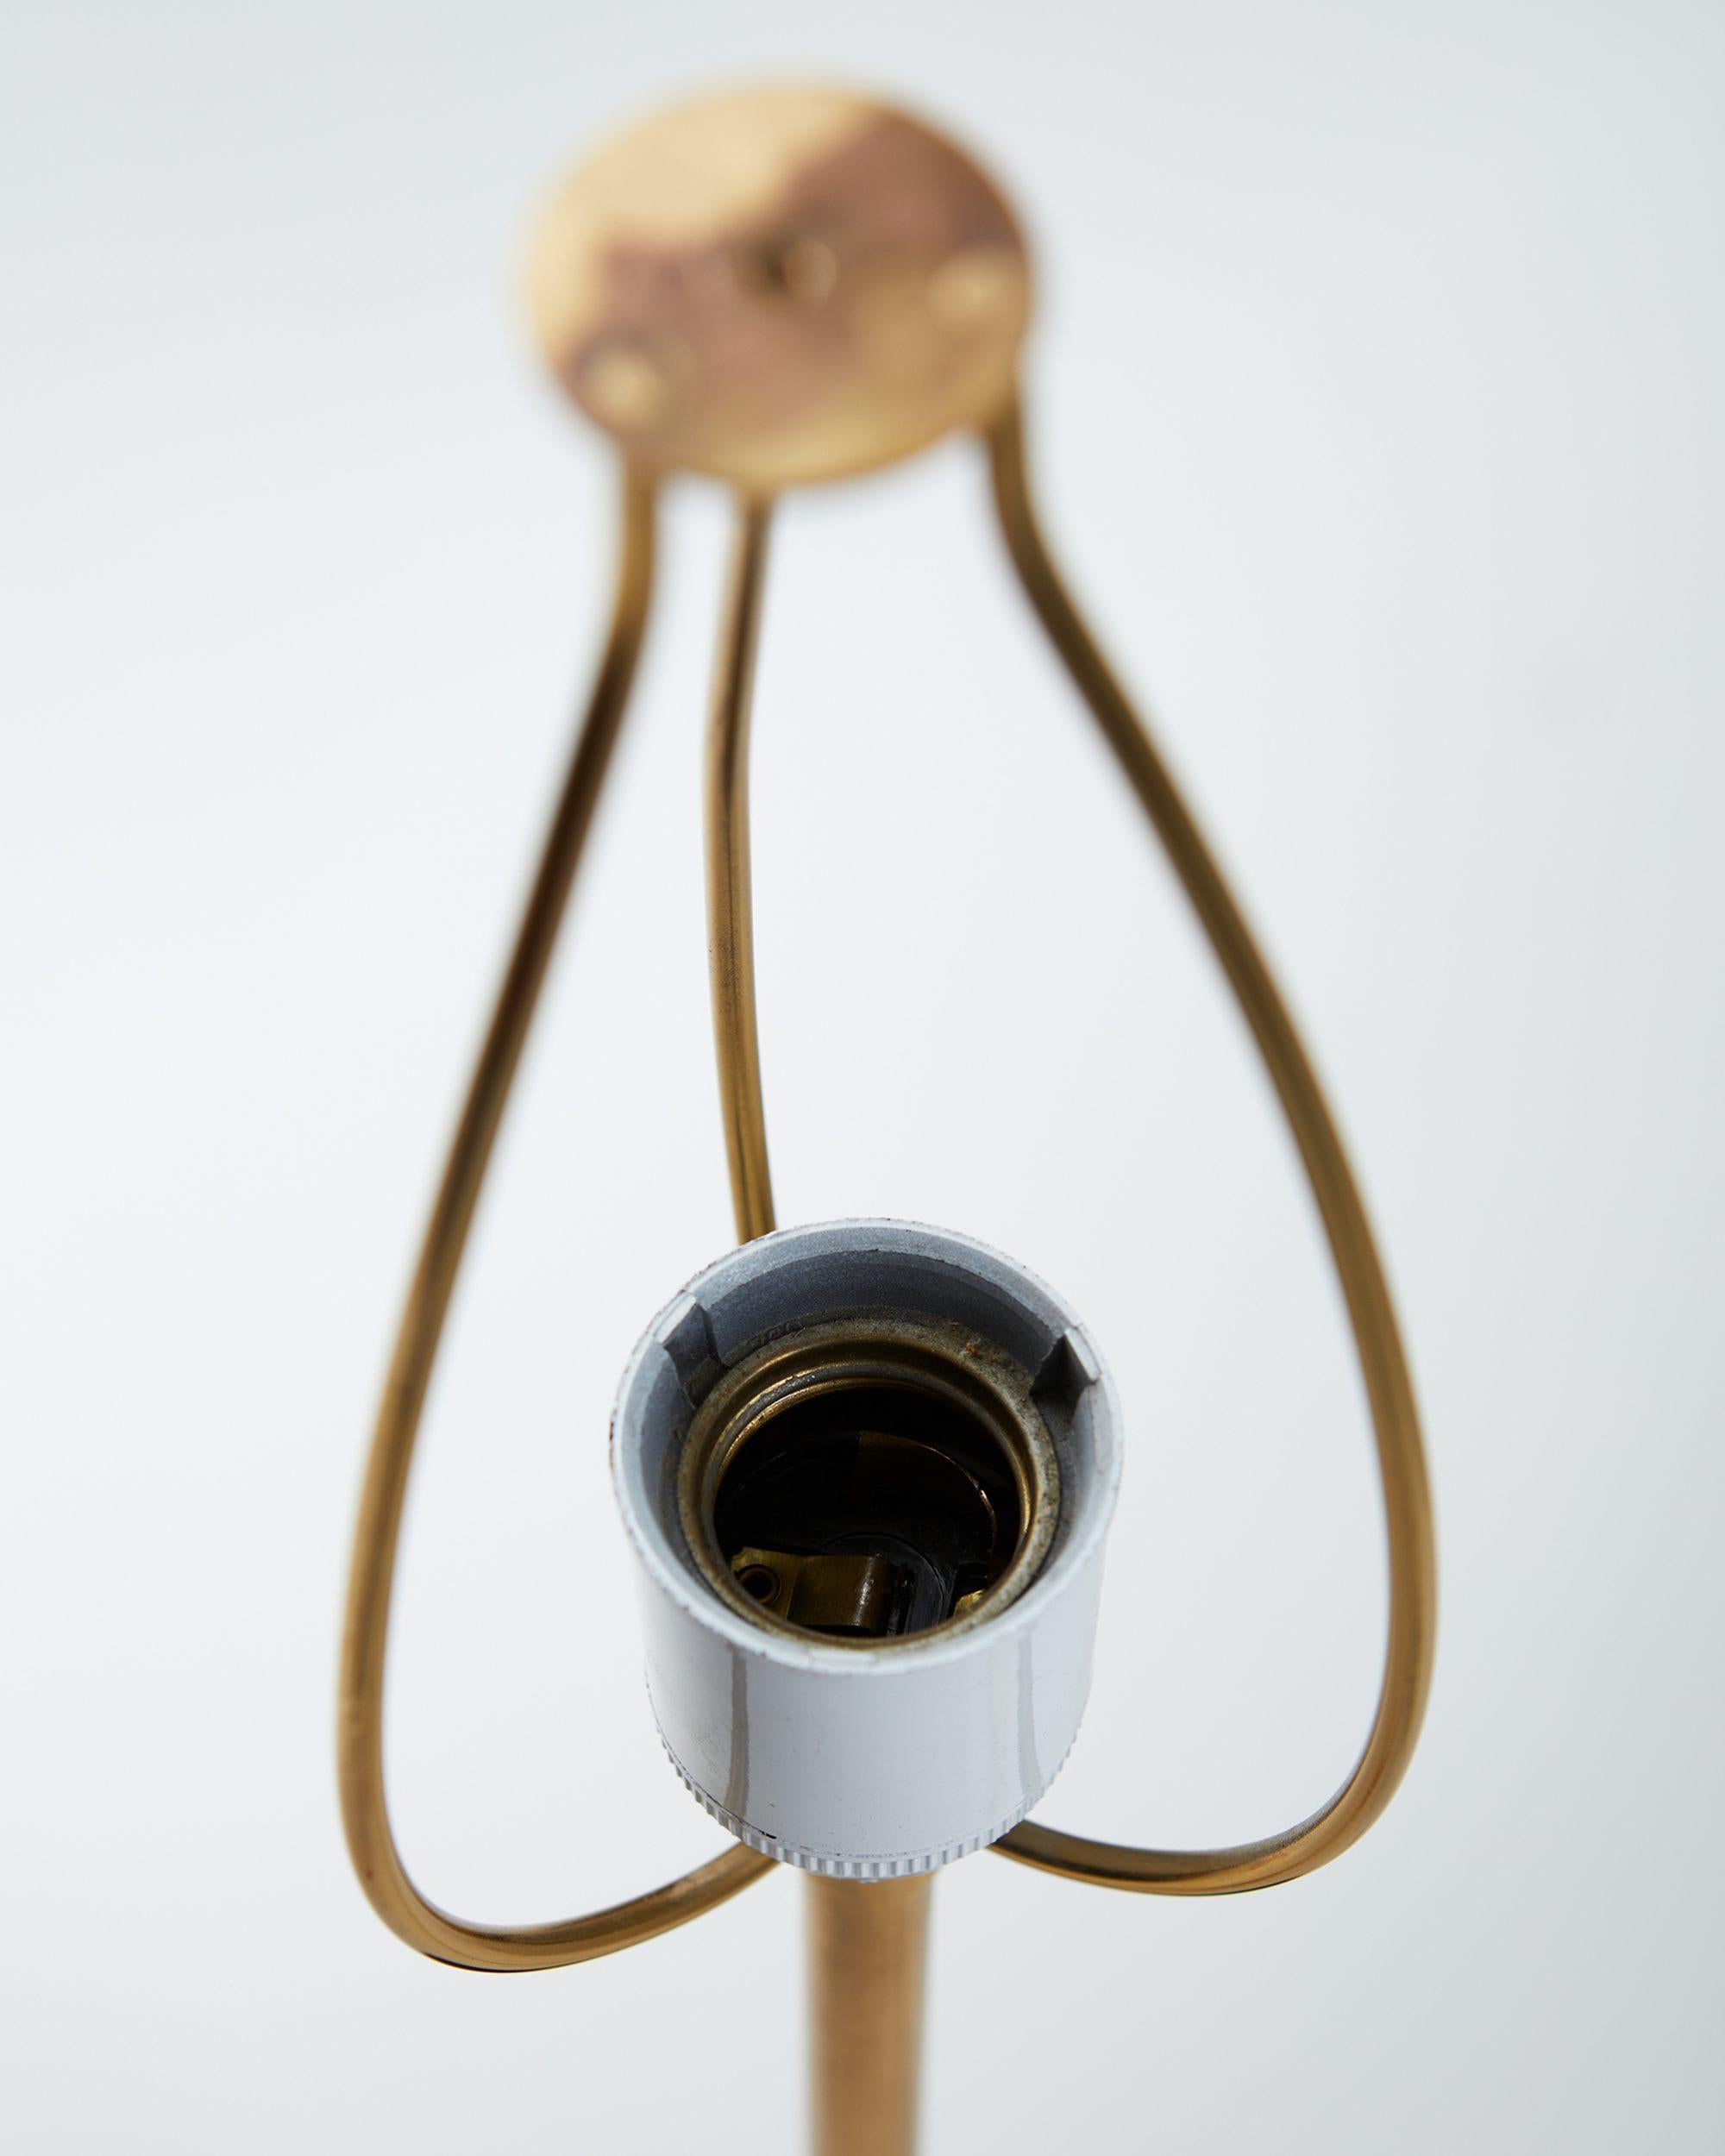 Brass Table Lamp Model 2466 Designed by Josef Frank for Svenskt Tenn